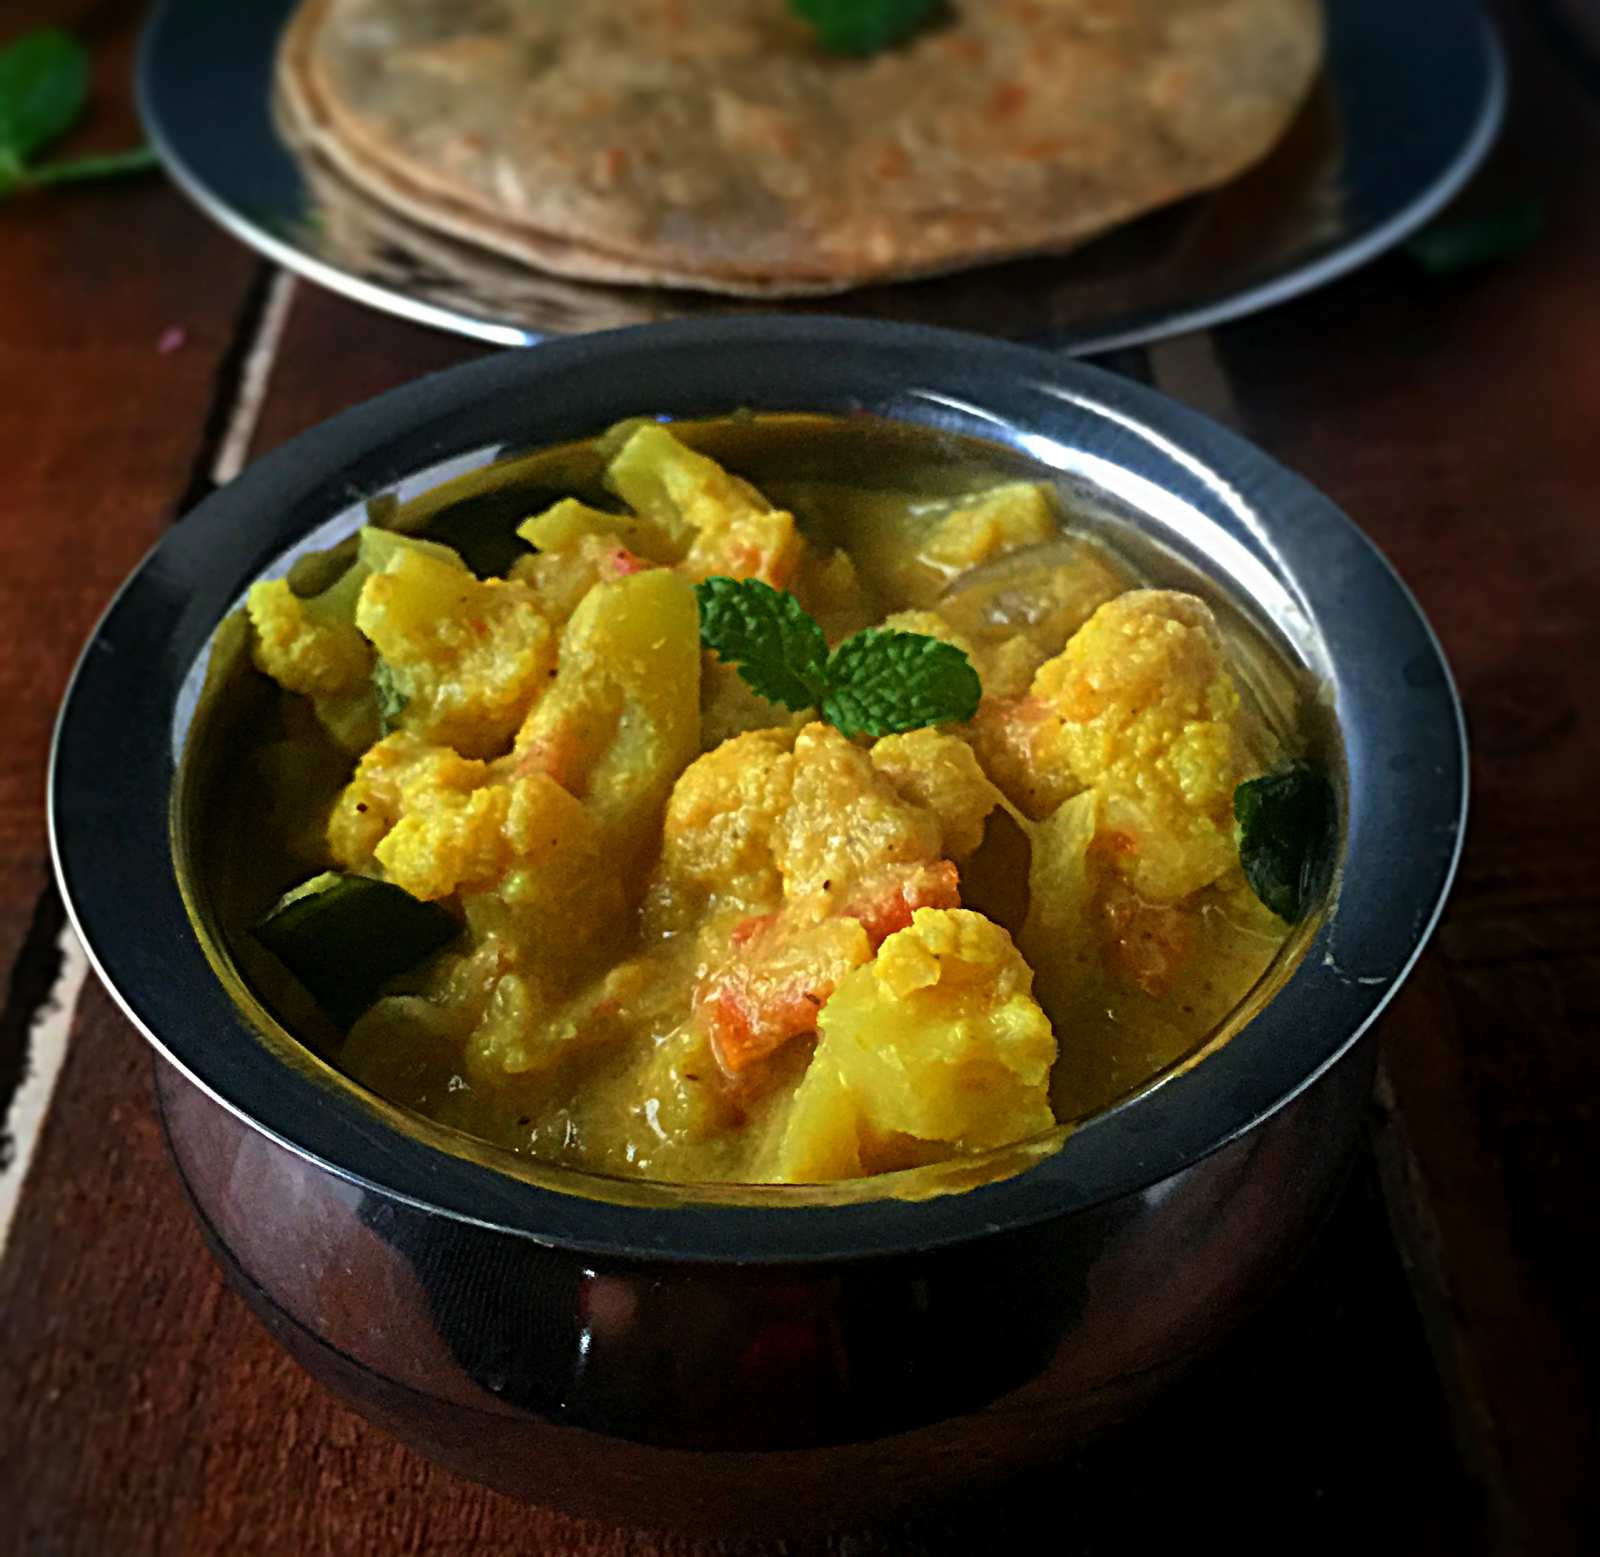 गोभी कुरमा रेसिपी - Cauliflower Kurma (Recipe In Hindi)